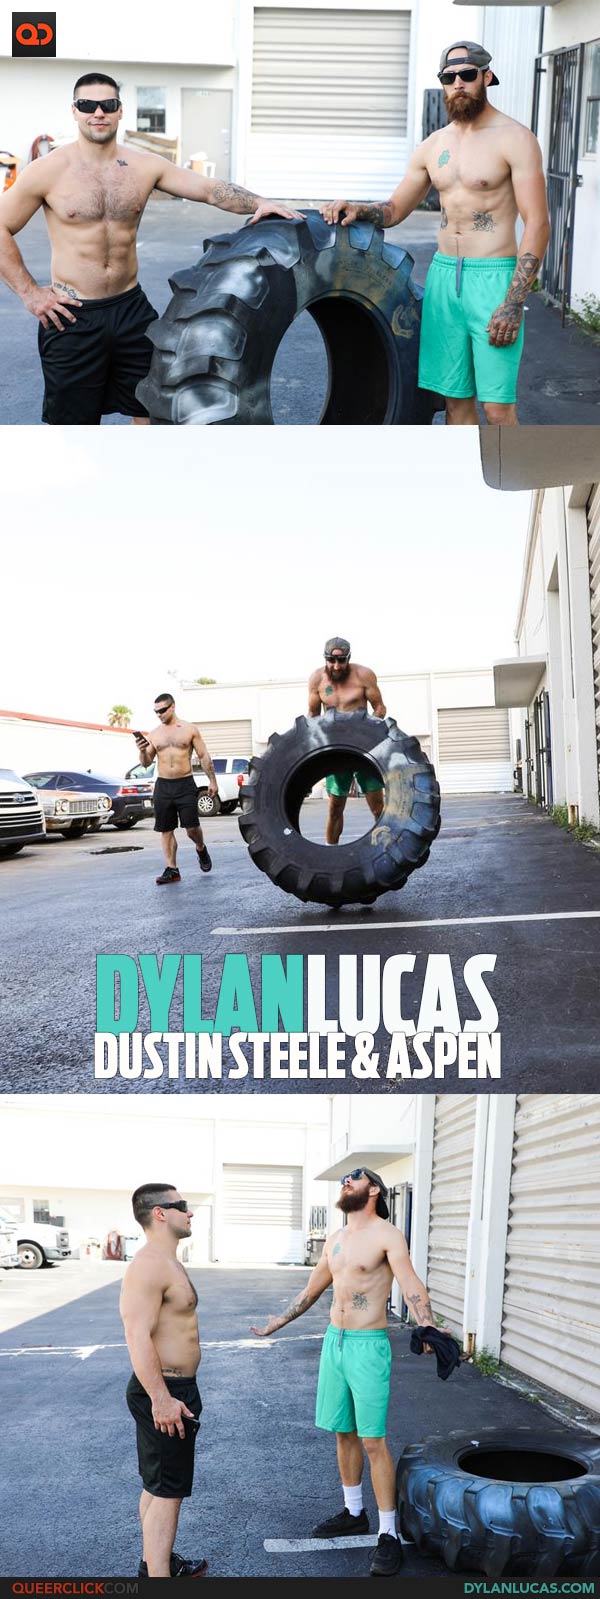 Dylan Lucas: Dustin Steele & Aspen